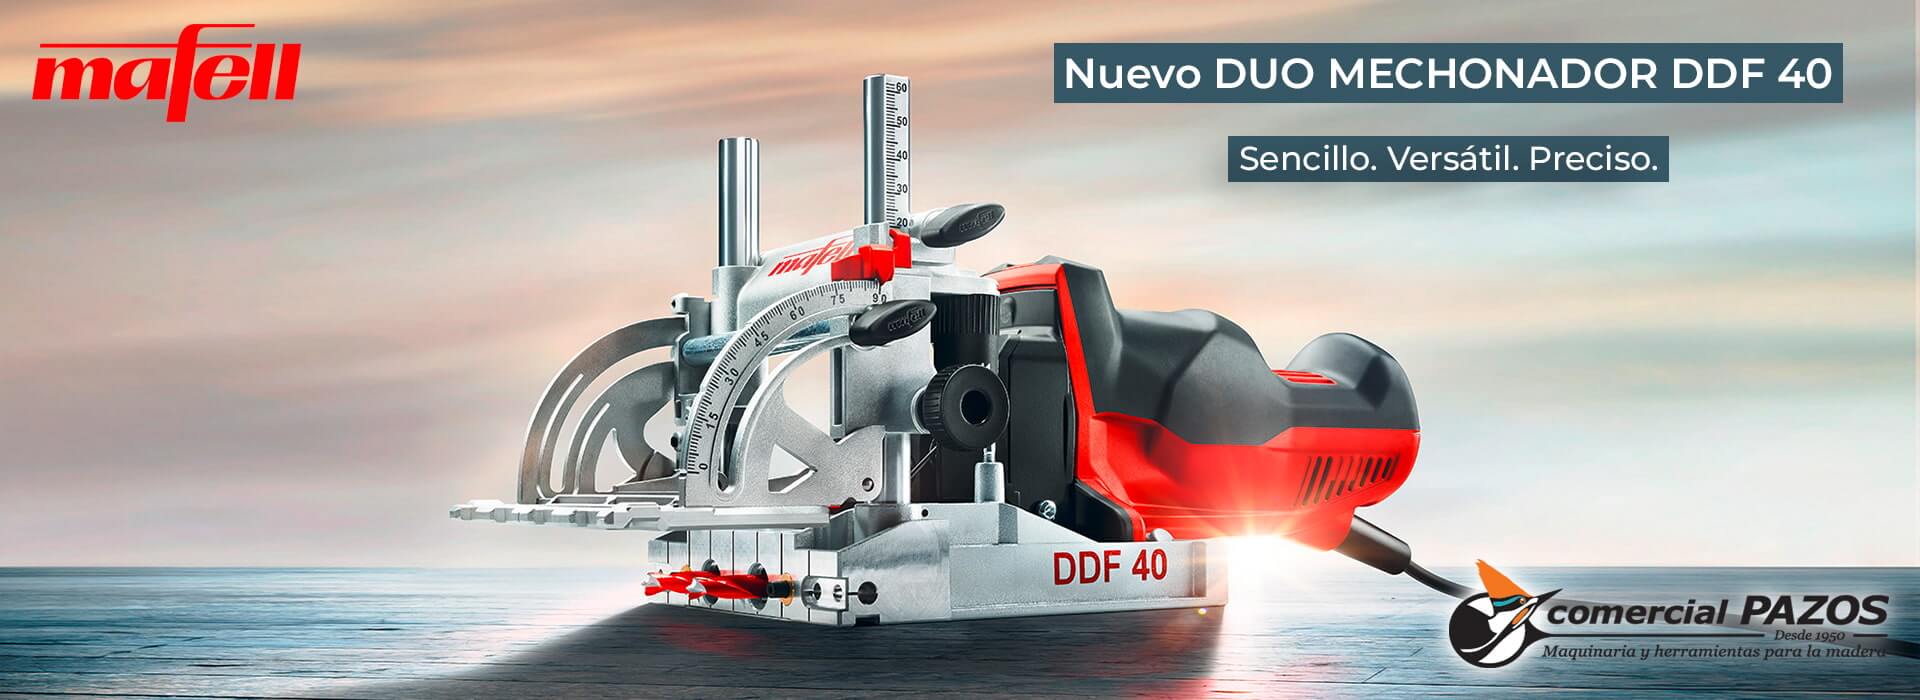 Nuevo DUO Mechonador DDF 40